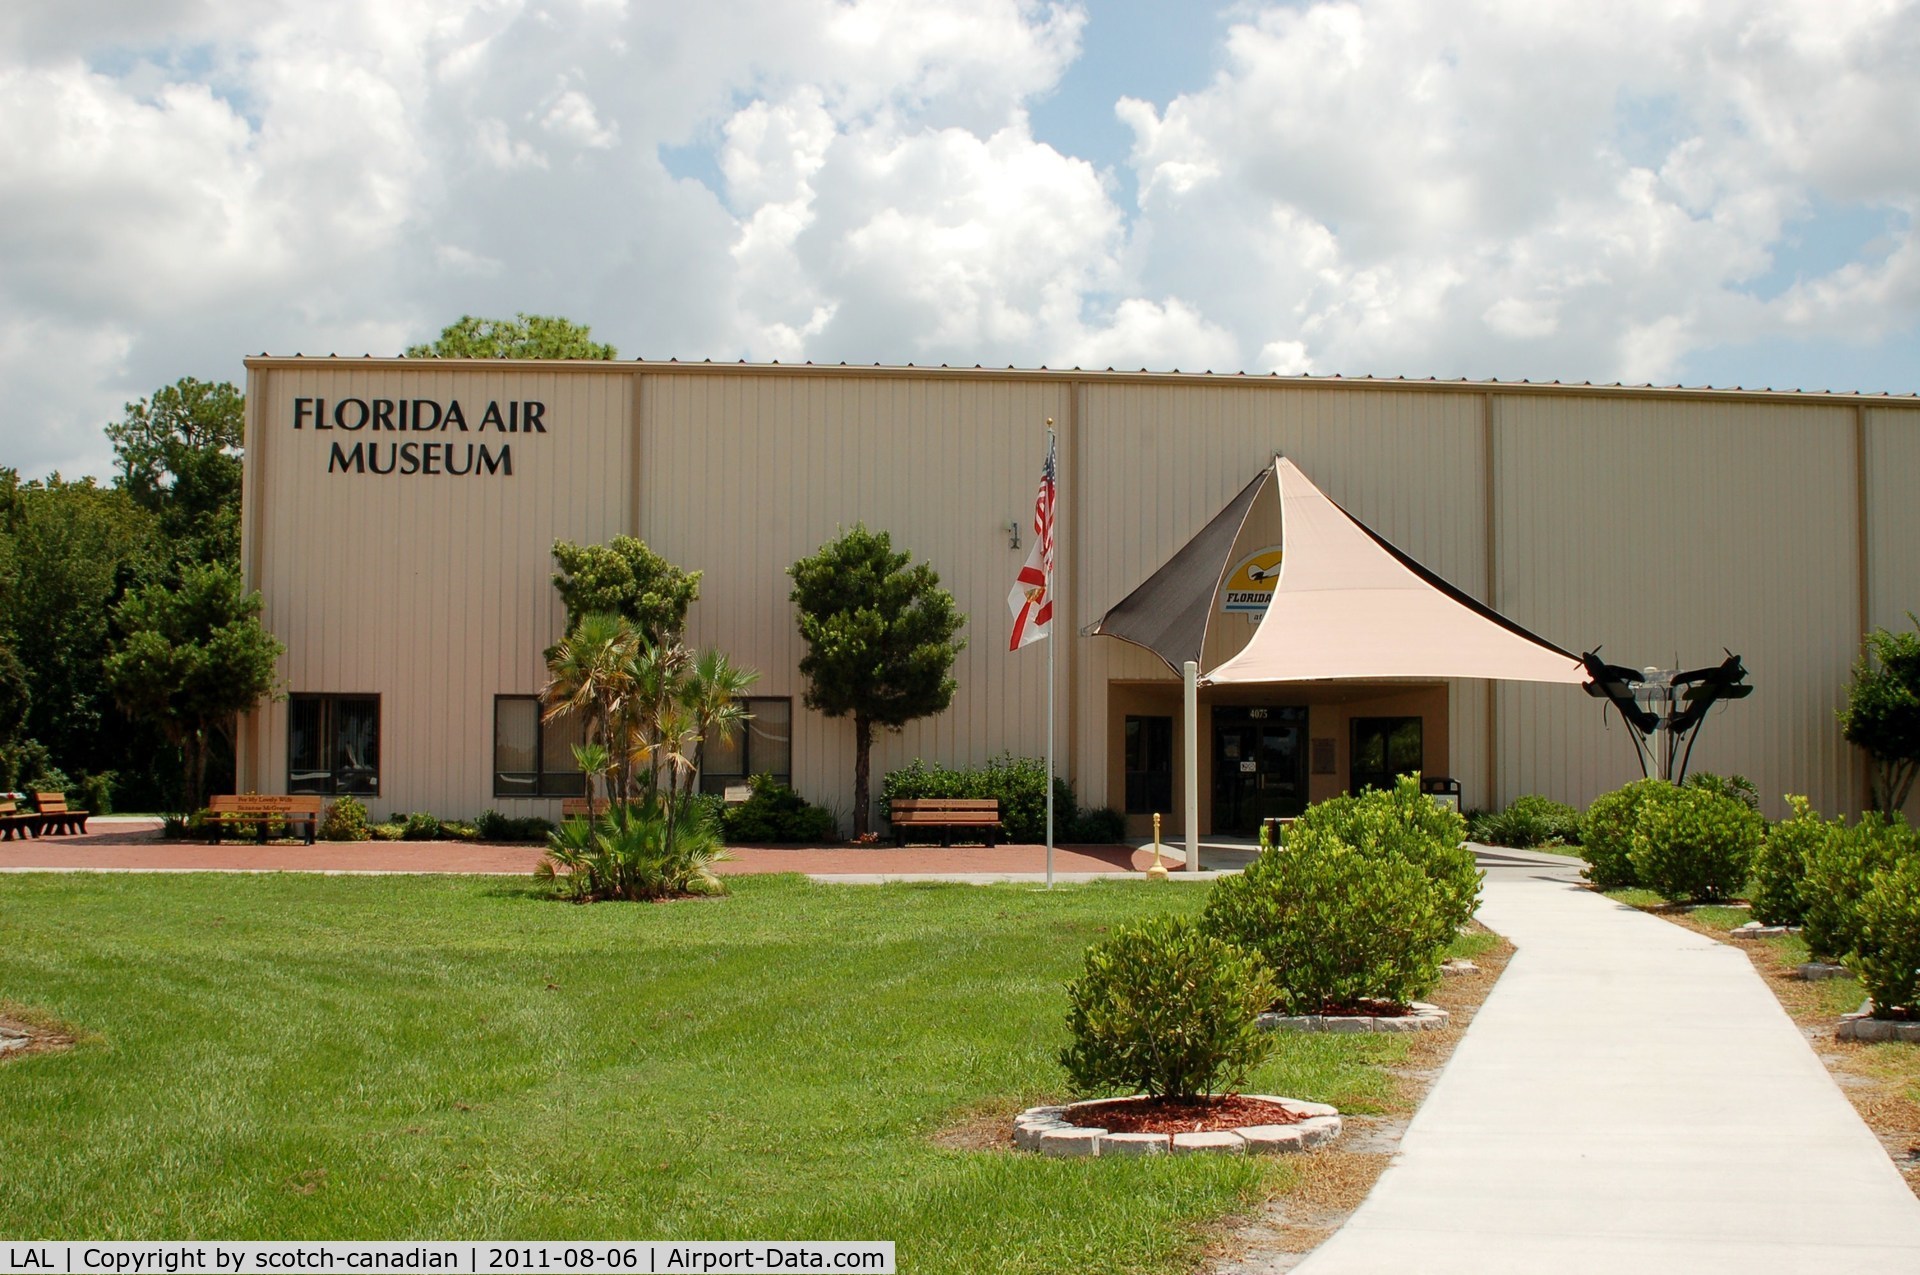 Lakeland Linder Regional Airport (LAL) - Florida Air Museum at Lakeland Linder Regional Airport, Lakeland, FL 